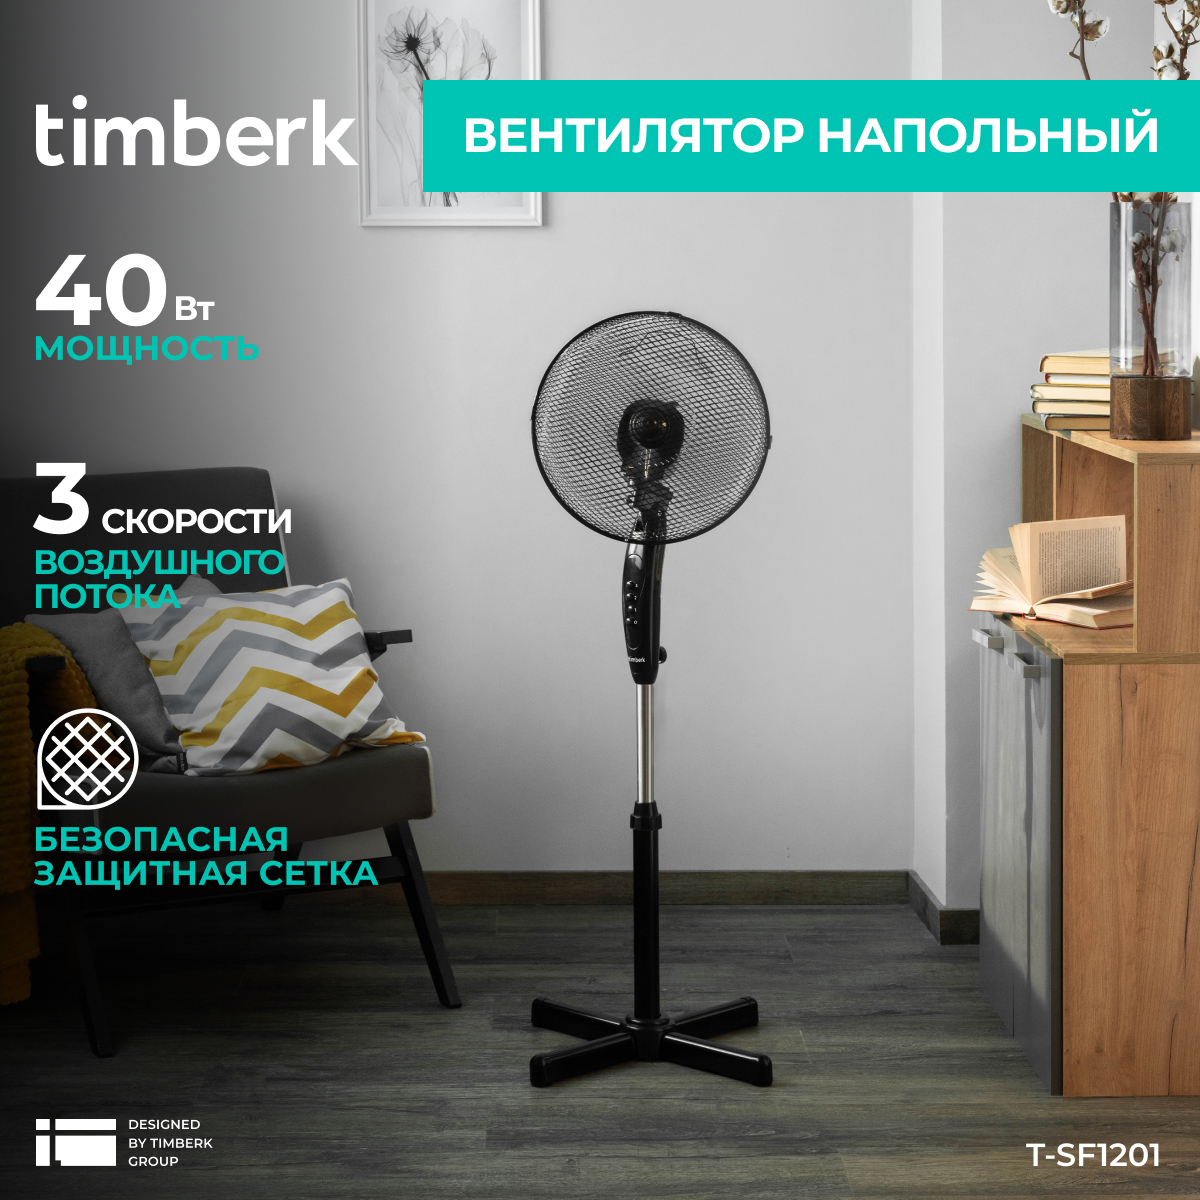 Вентилятор напольный Timberk T-SF1201 черный - купить в ТЕХНОПАРК (доставка МегаМаркет), цена на Мегамаркет